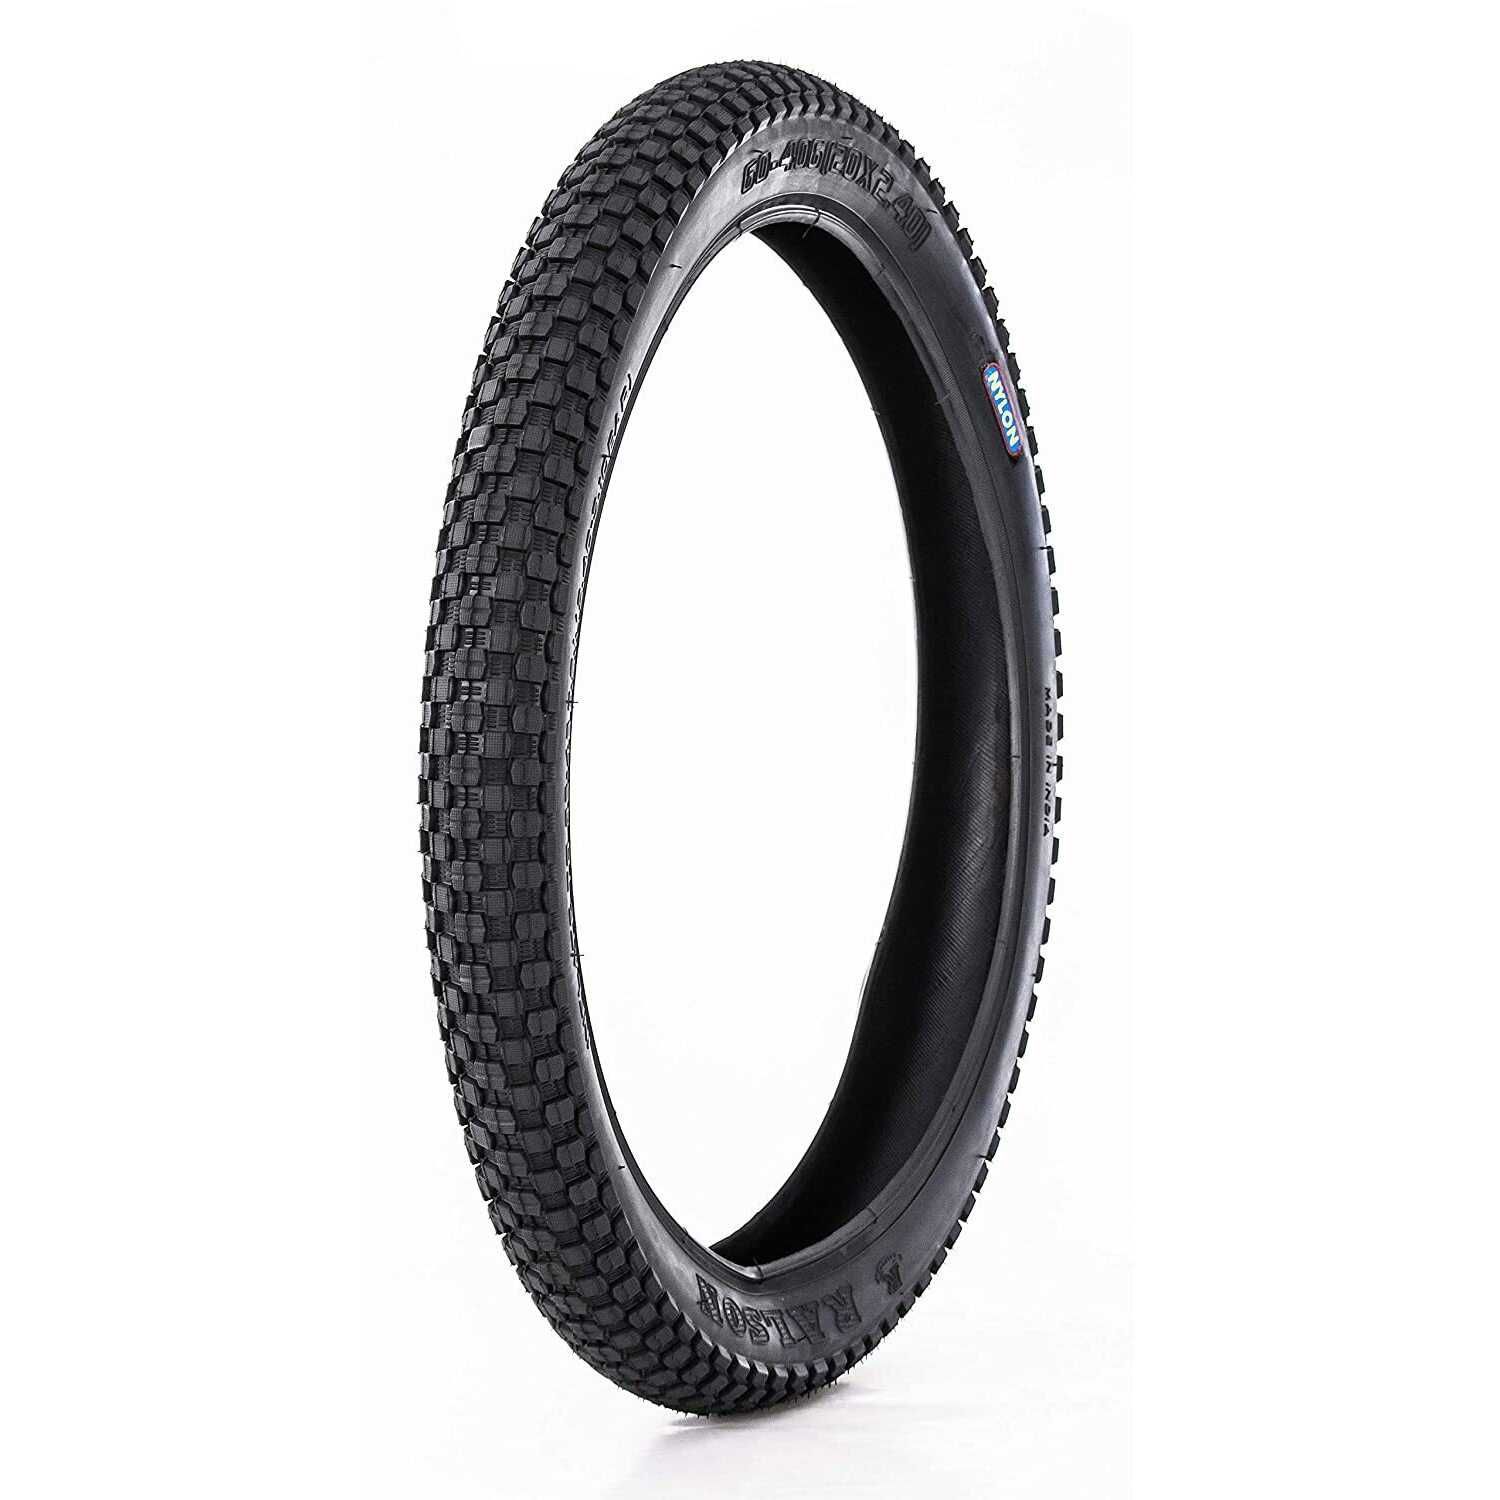 Външна гума за велосипед Ralson 20x2.35 (60-406), Защита от спукване